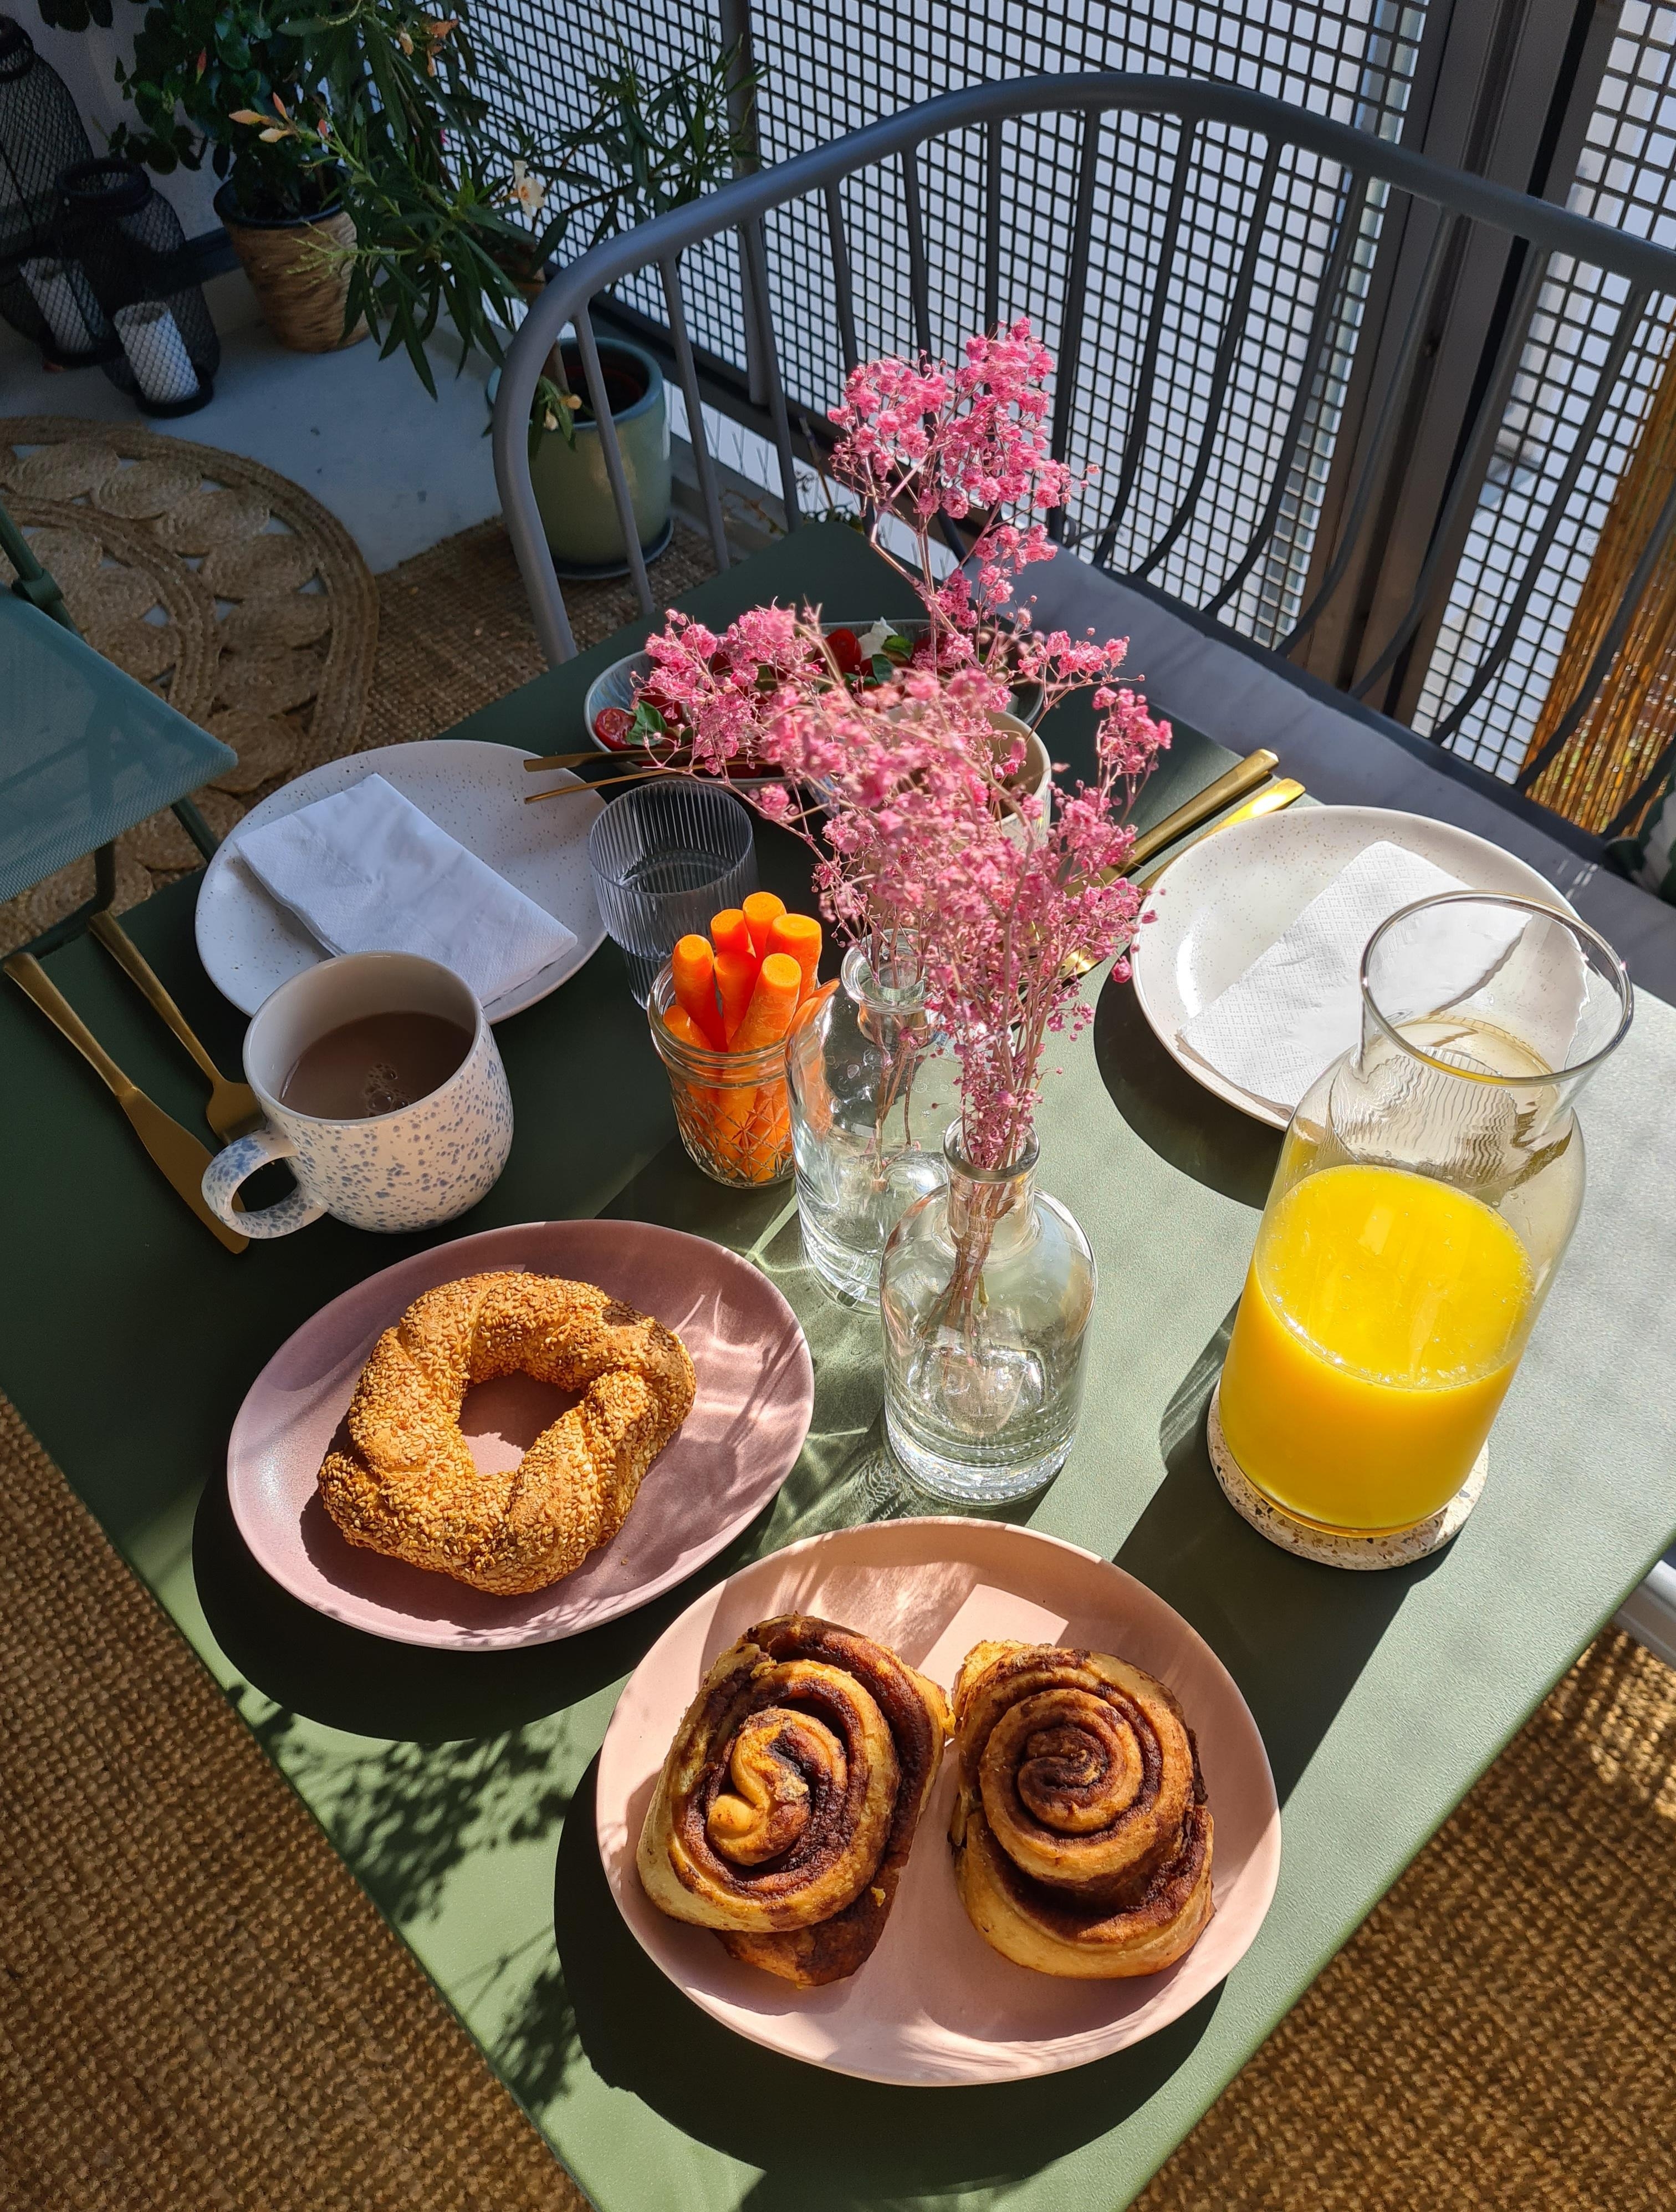 Frühstück auf Balkonien
#balkon #loggia #frühstück #brunch